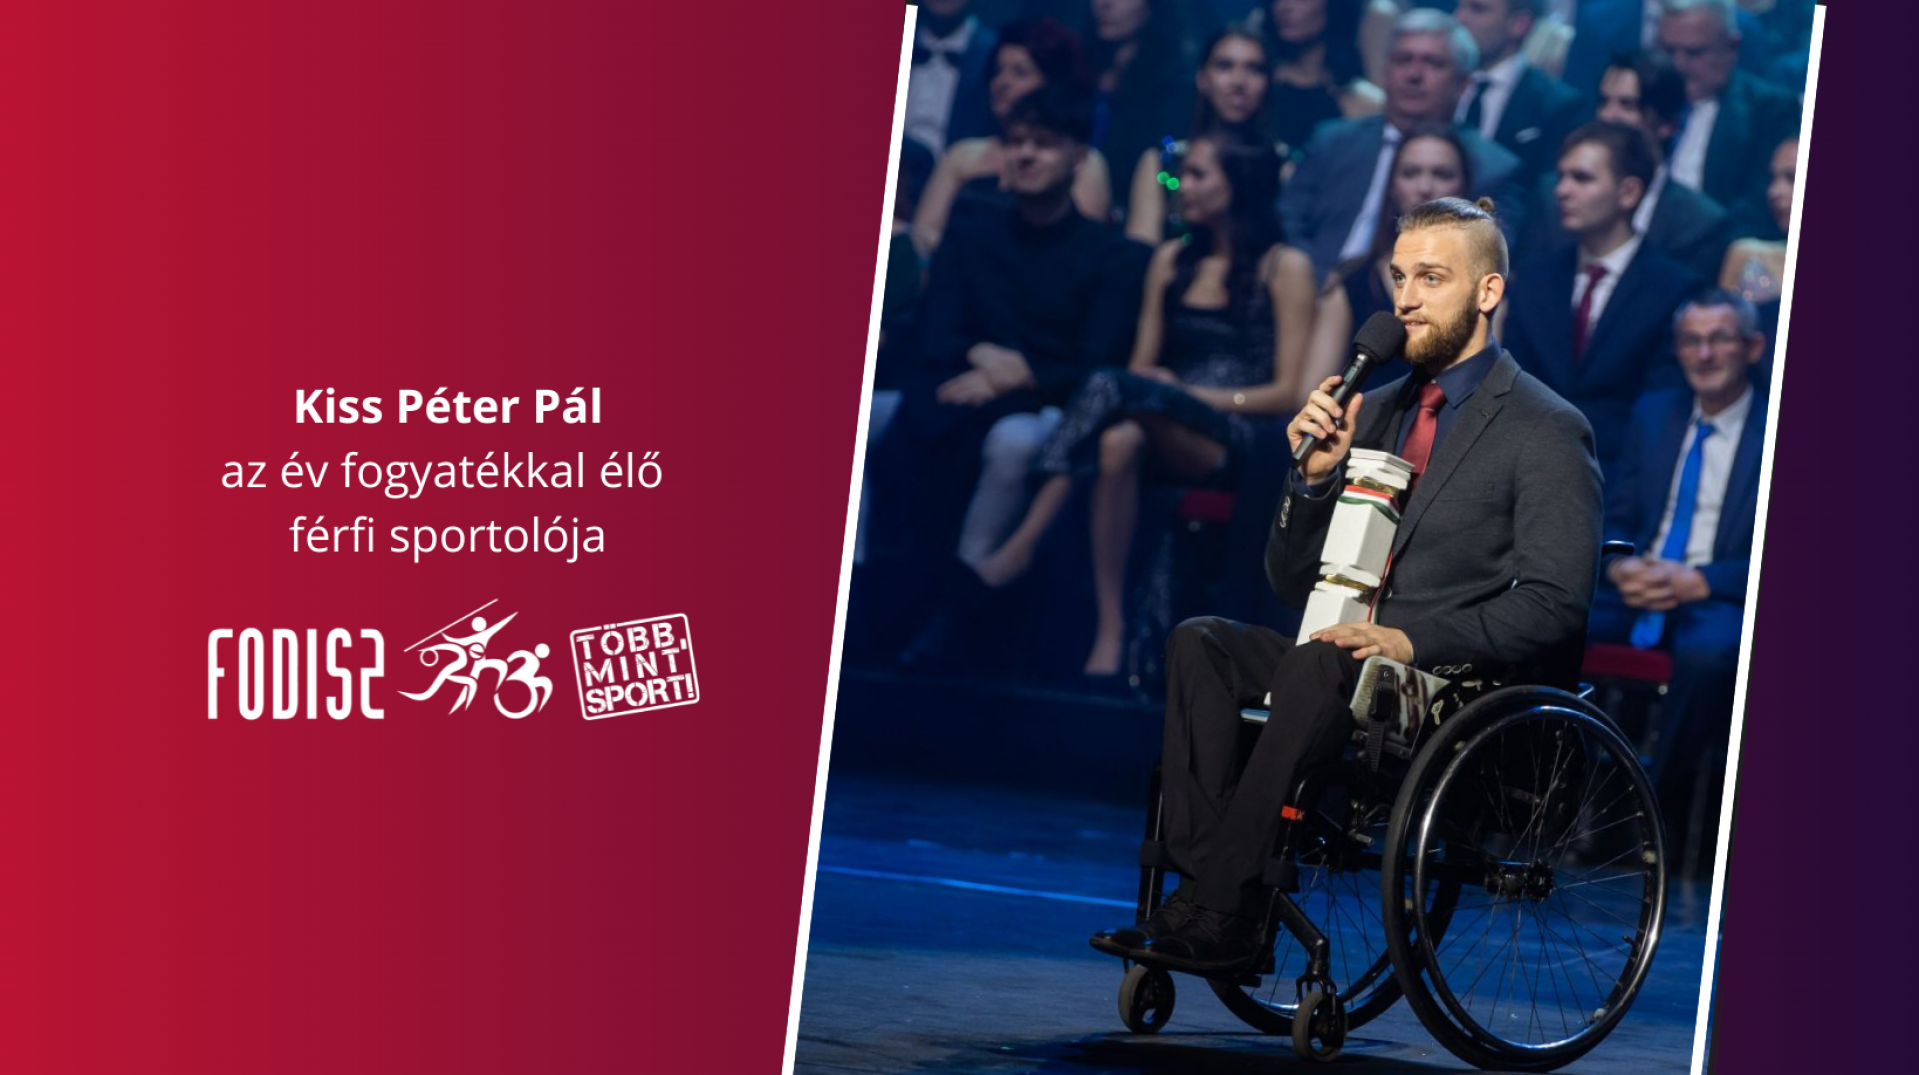 Kiss Péter Pál harmadik alkalommal az év fogyatékkal élő férfi sportolója